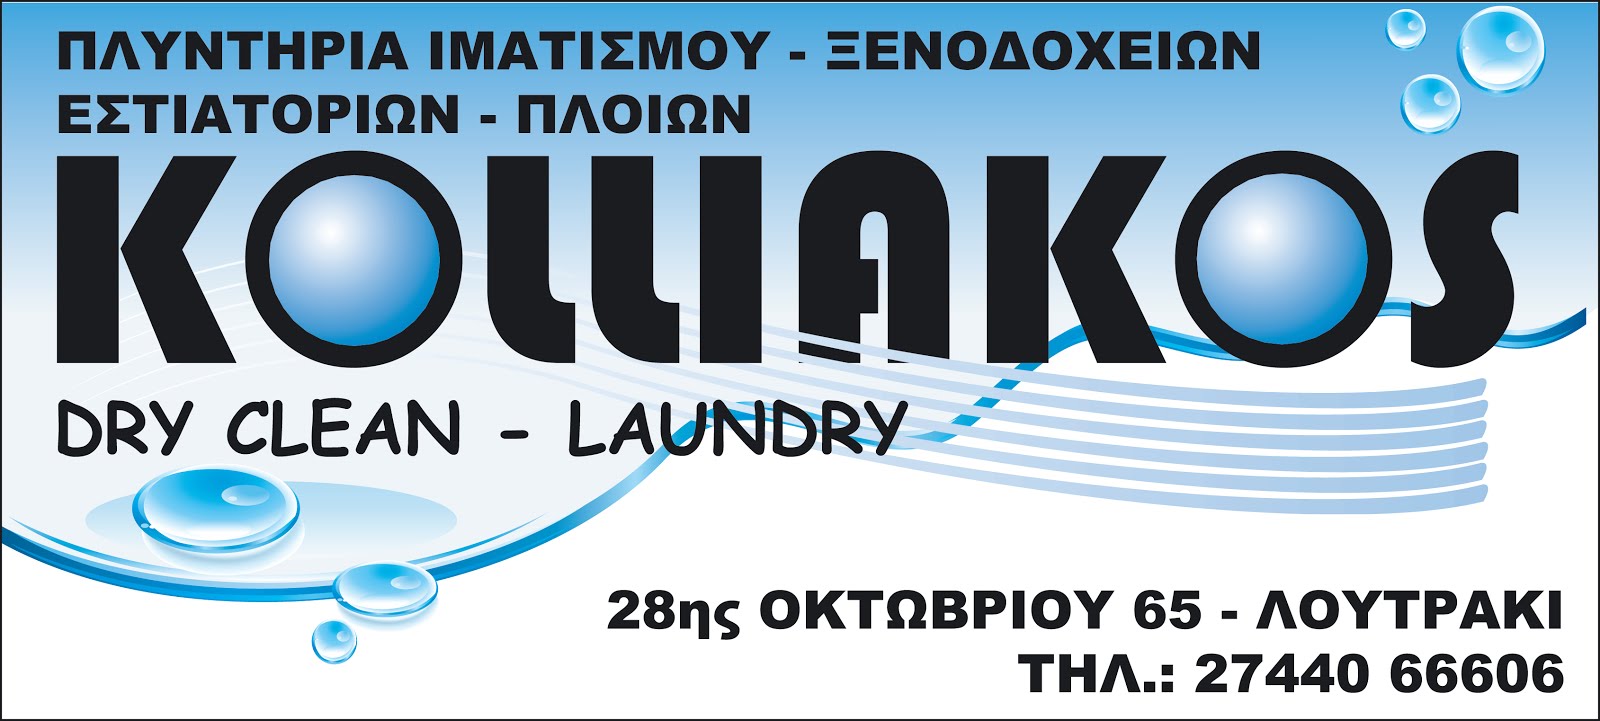 Kolliakos Laundry